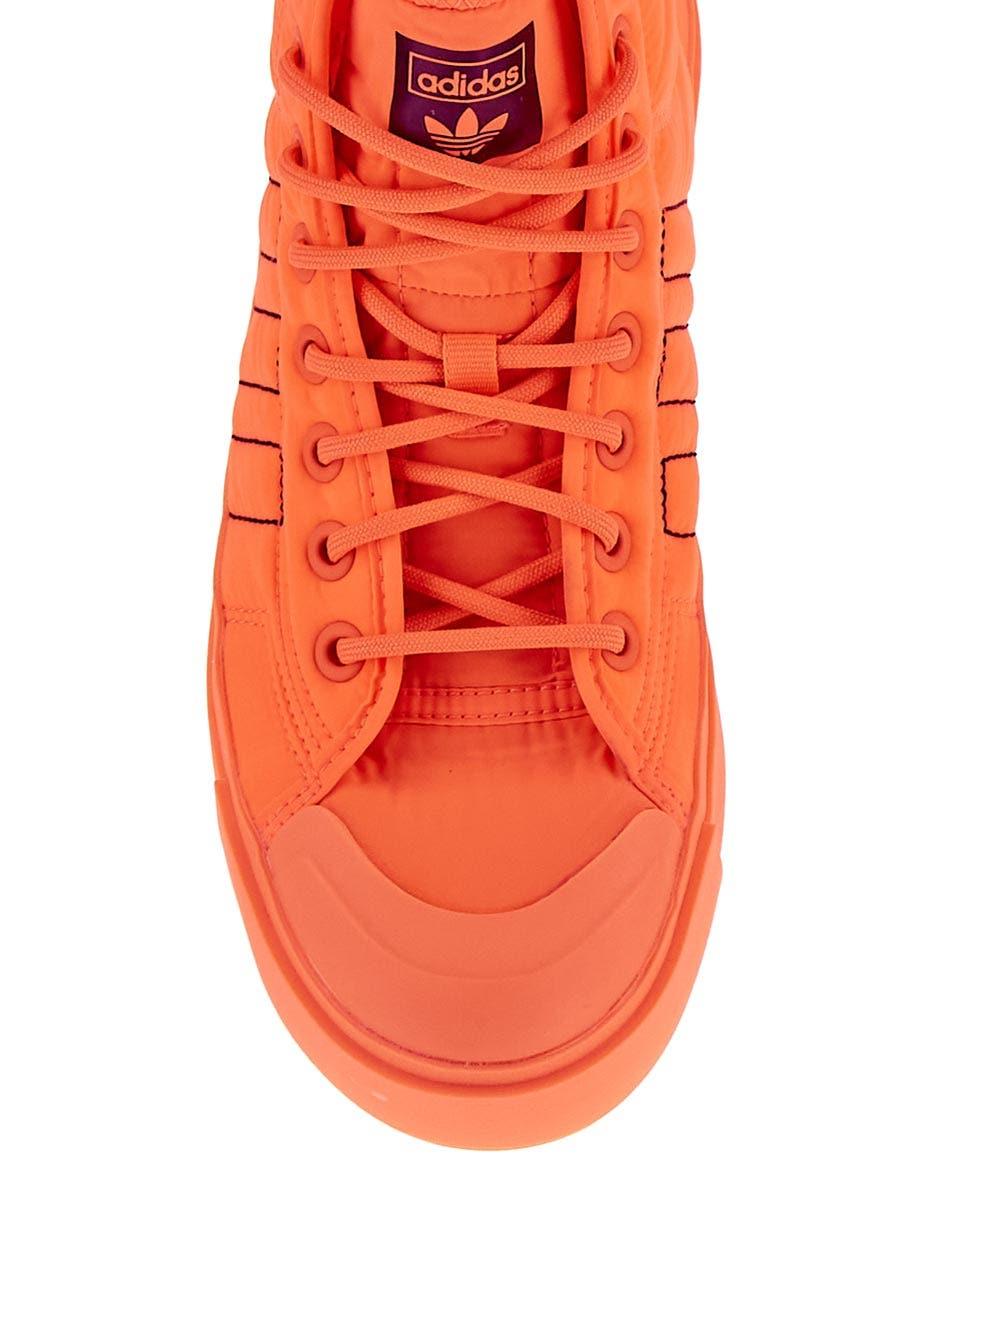 adidas Originals Nizza Bonega X Shoes in Orange | Lyst